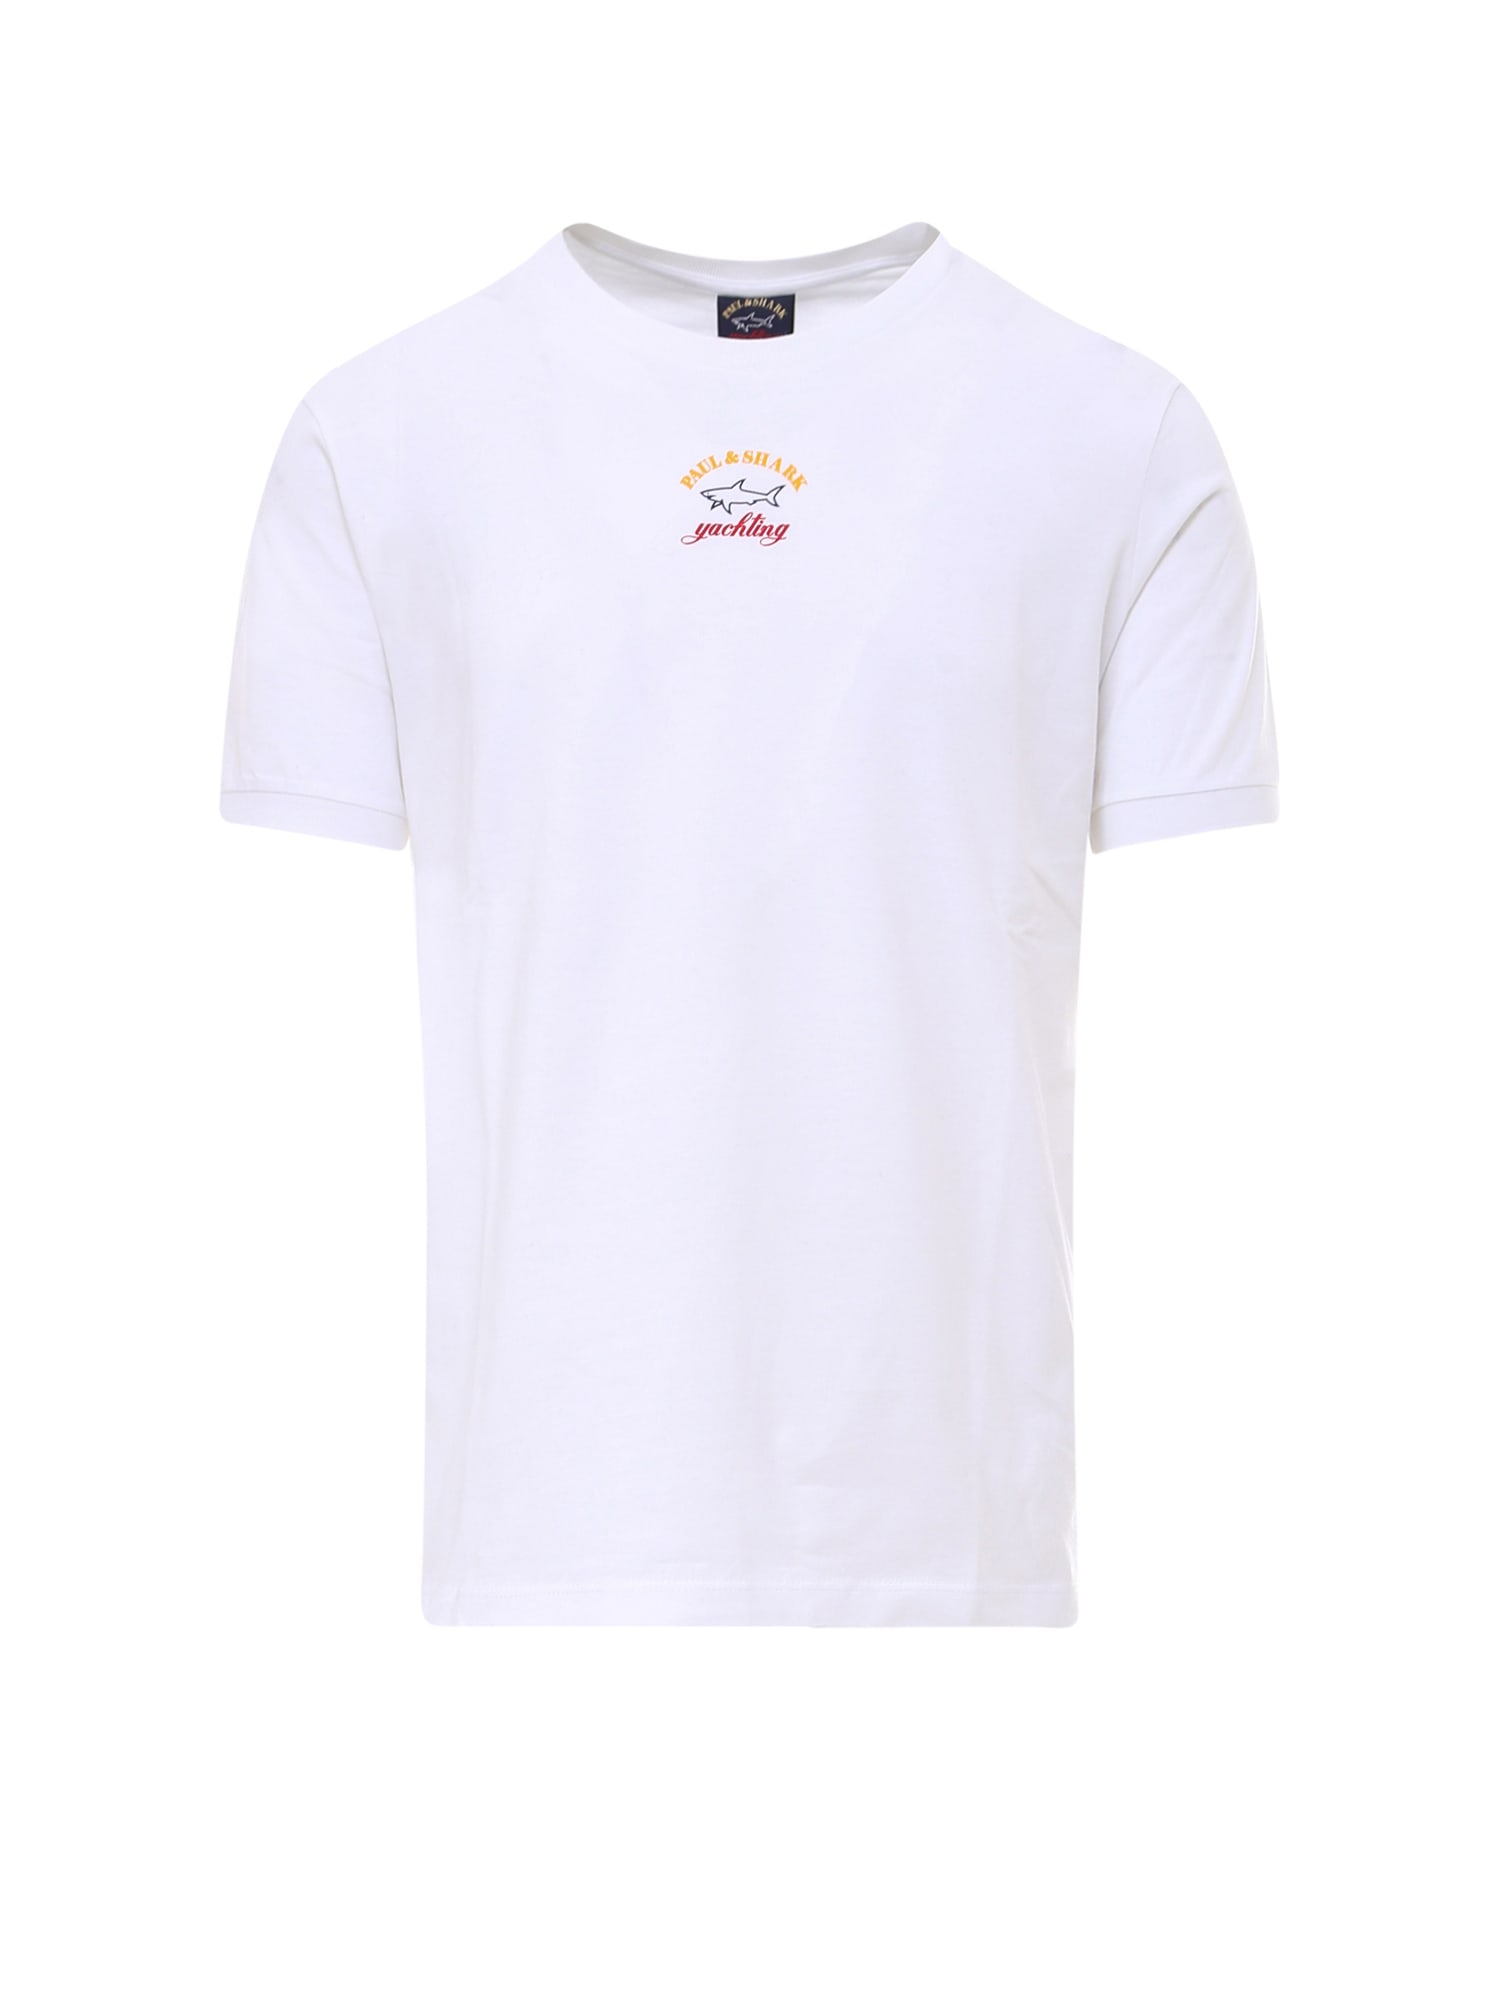 Paul&amp;shark T-shirt In White